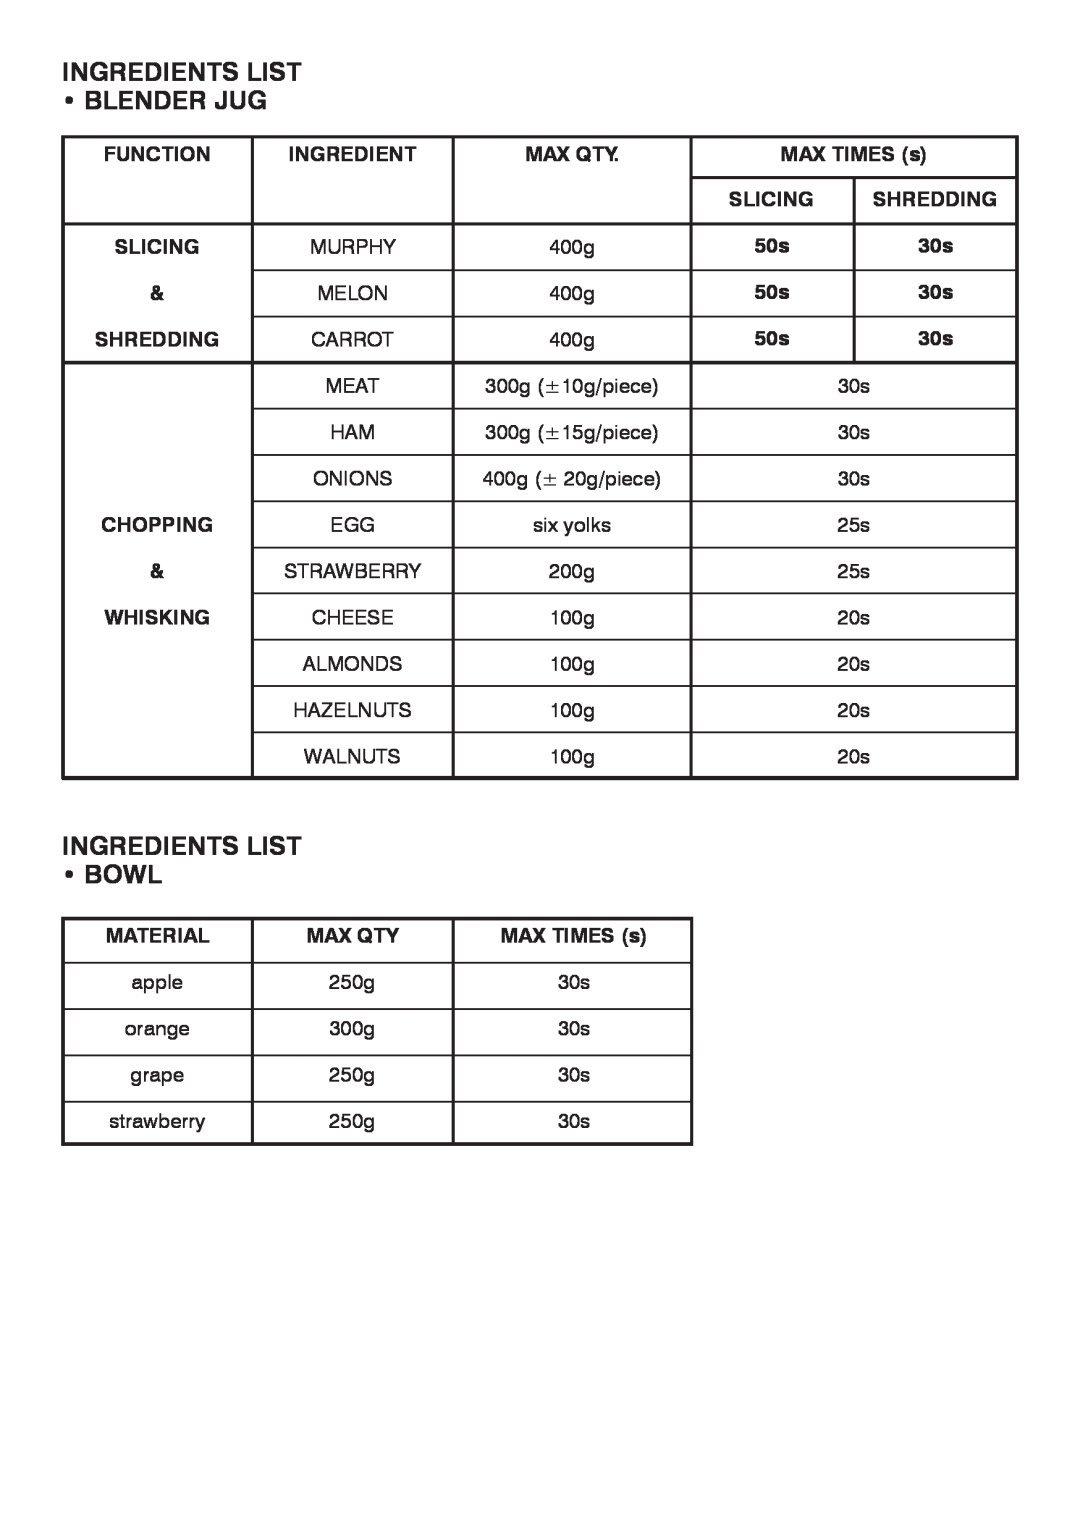 Mellerware 2 6 2 1 05 0 0 W specifications Ingredients List Blender Jug, Ingredients List Bowl 